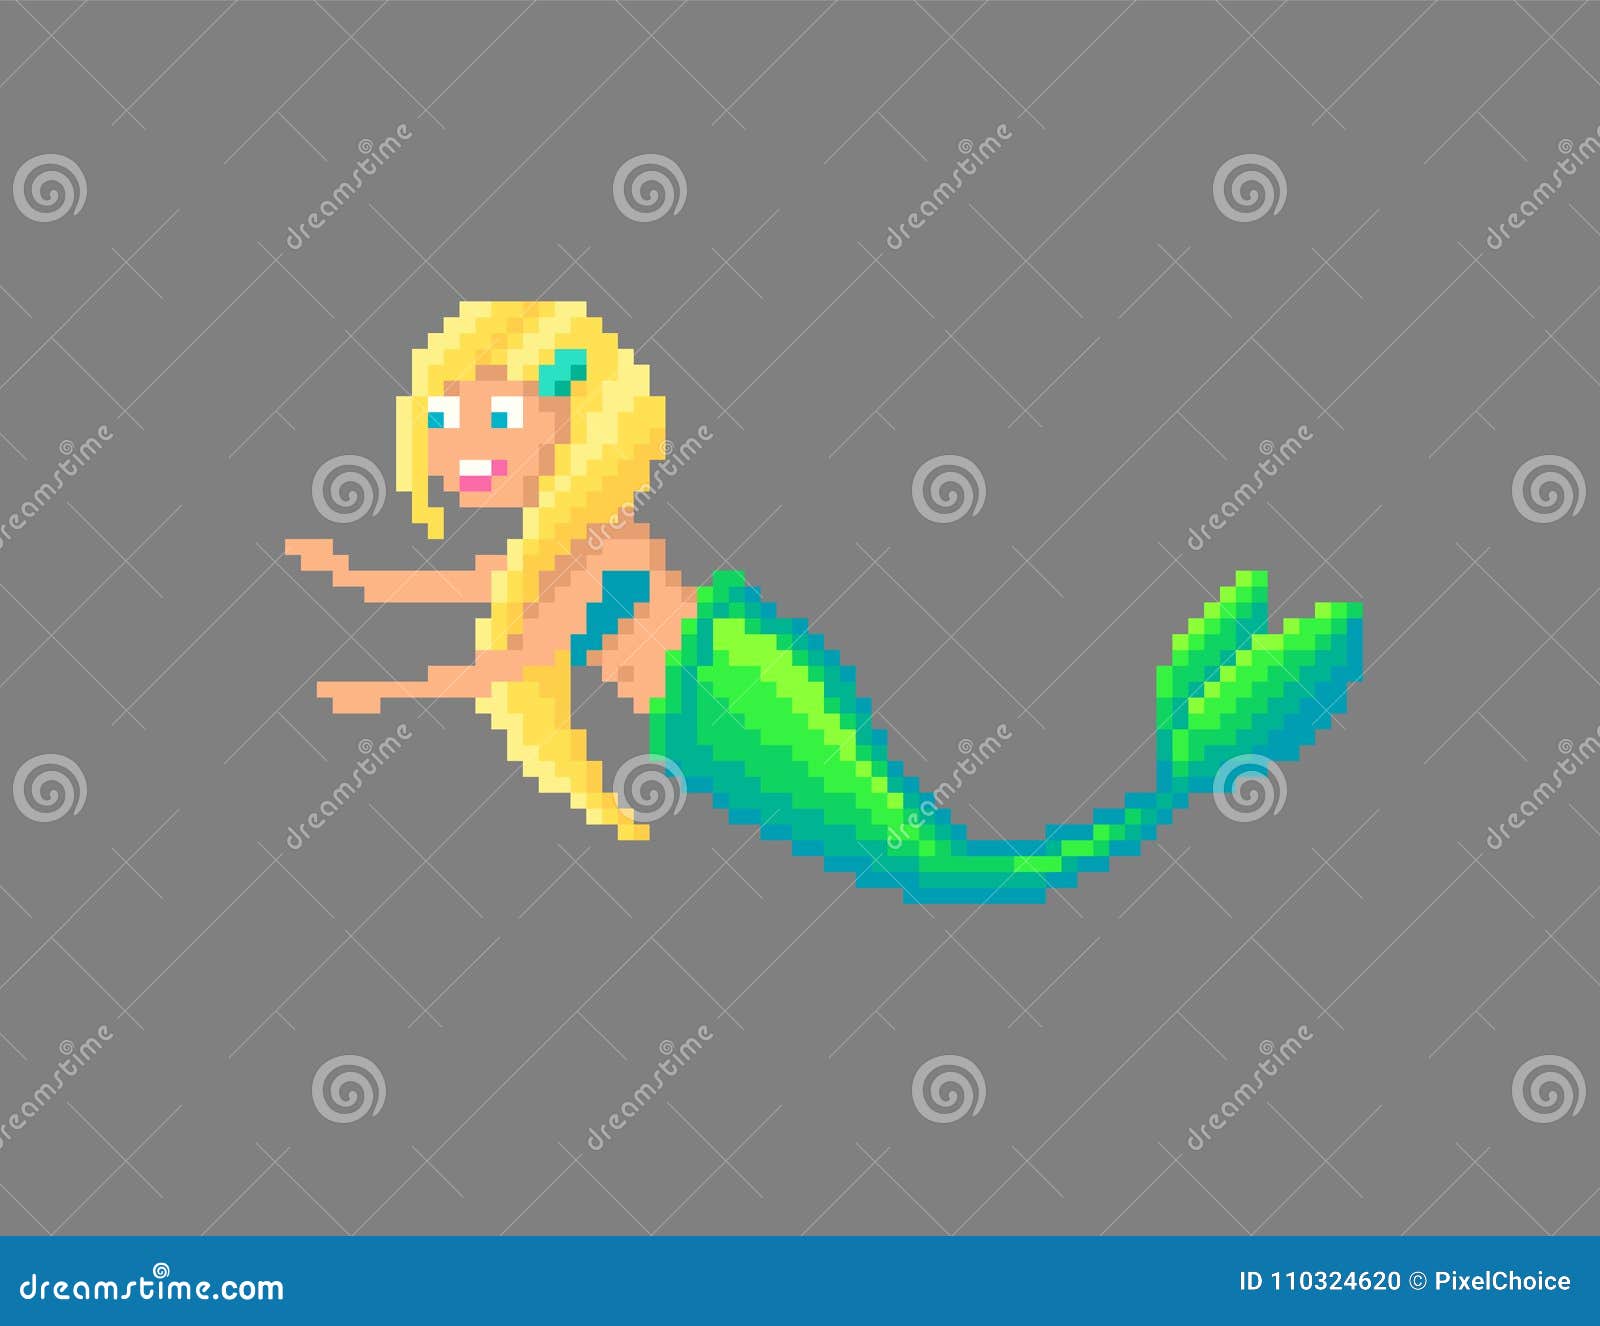 Pixel art mermaid. stock vector. 